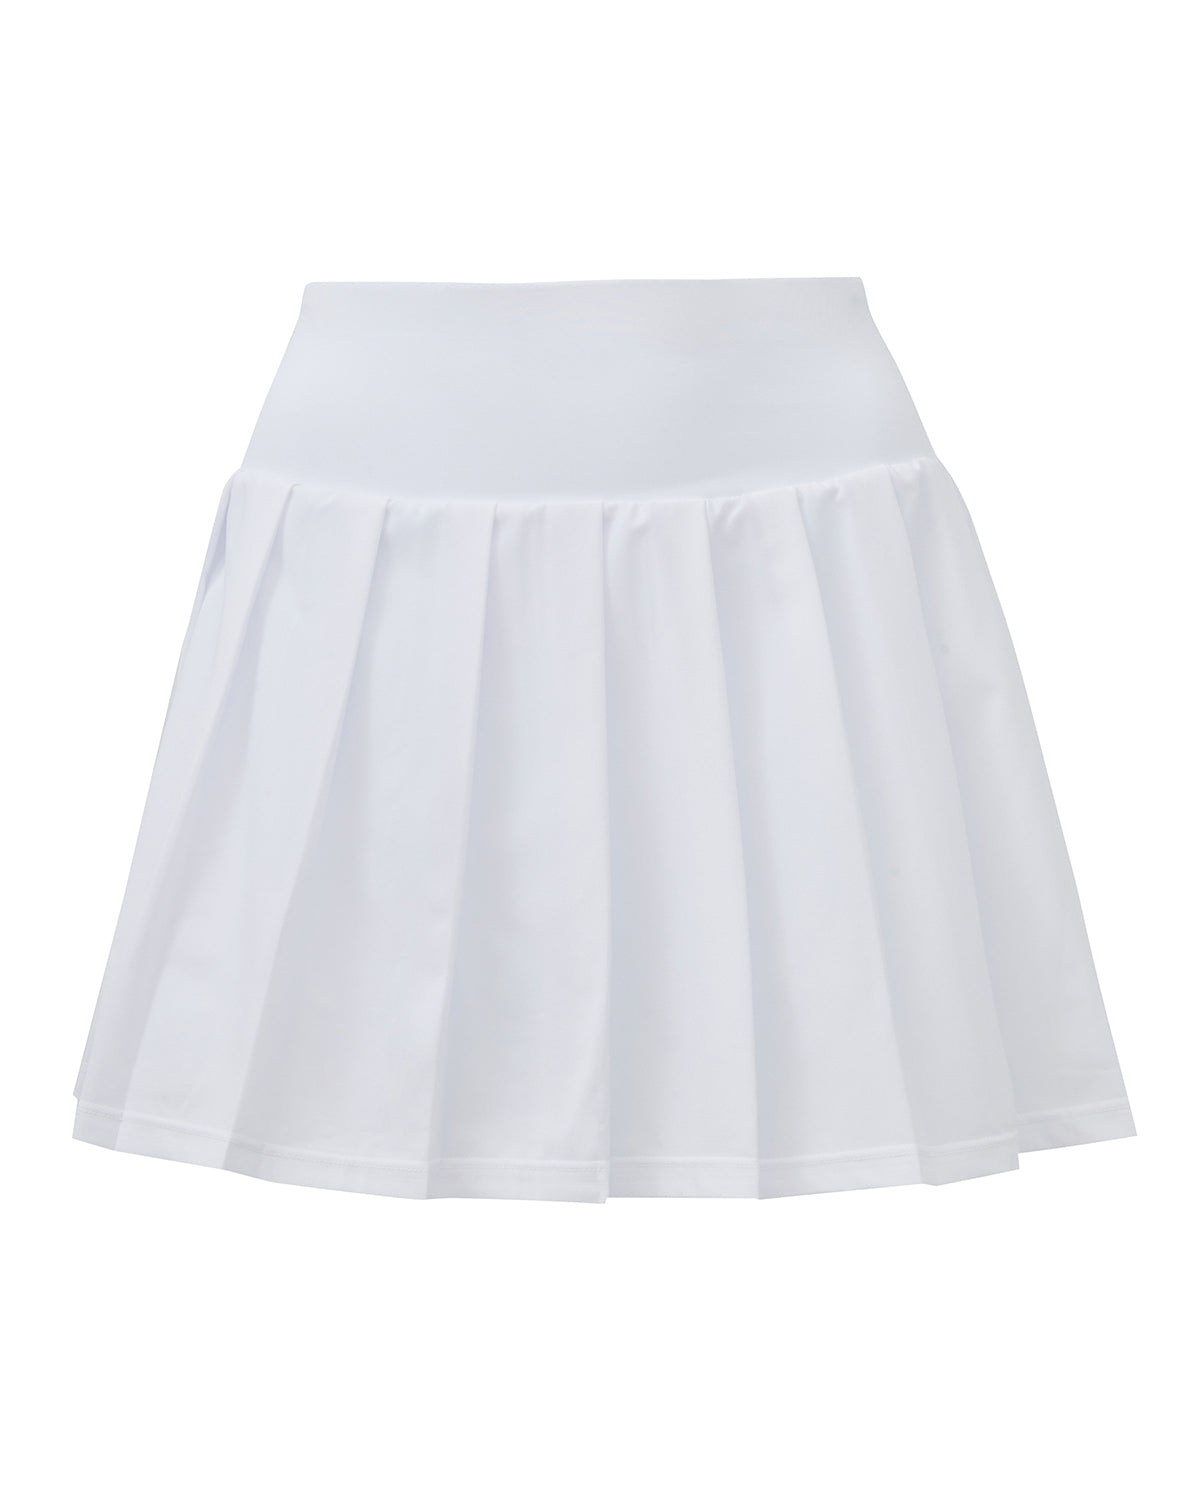 Ace Tennis Skirt In White